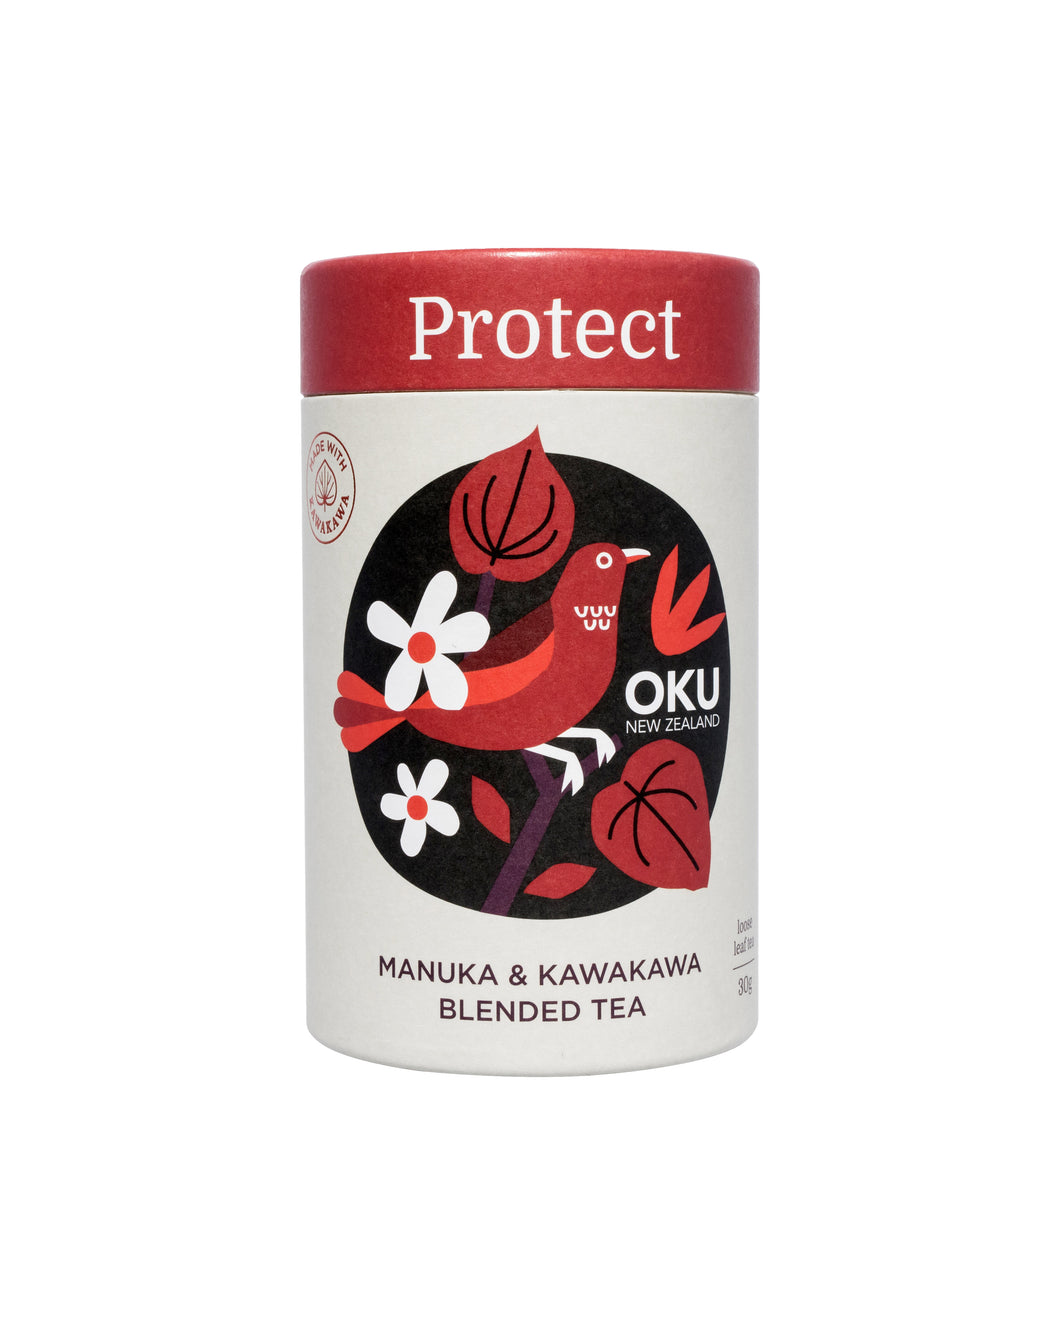 ŌKU Protect Tea 30g Loose